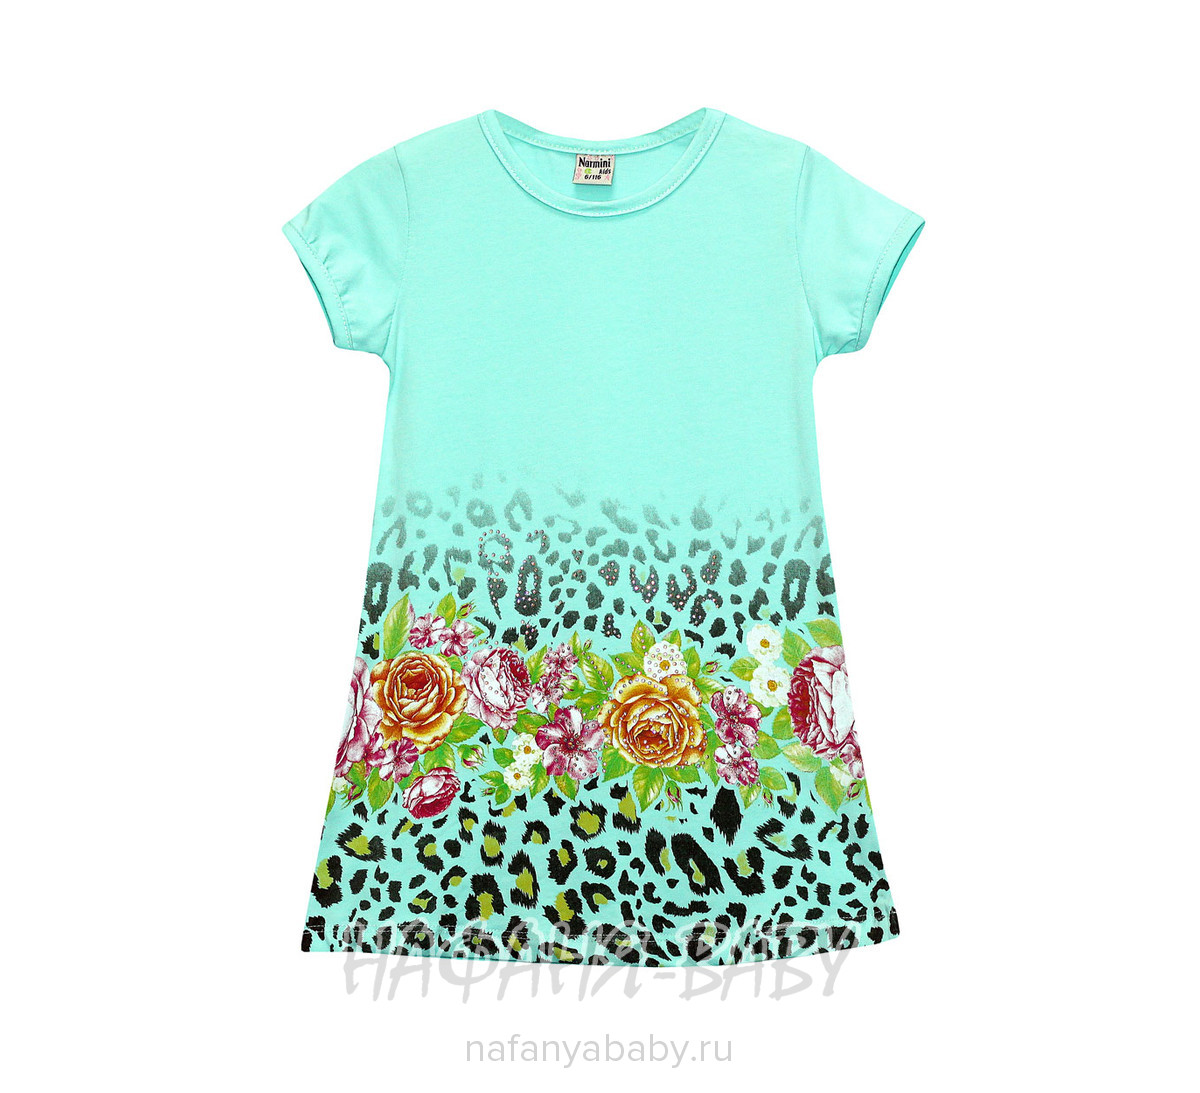 Детское платье NARMINI арт: 5517, 1-4 года, 5-9 лет, цвет аквамариновый, оптом Турция